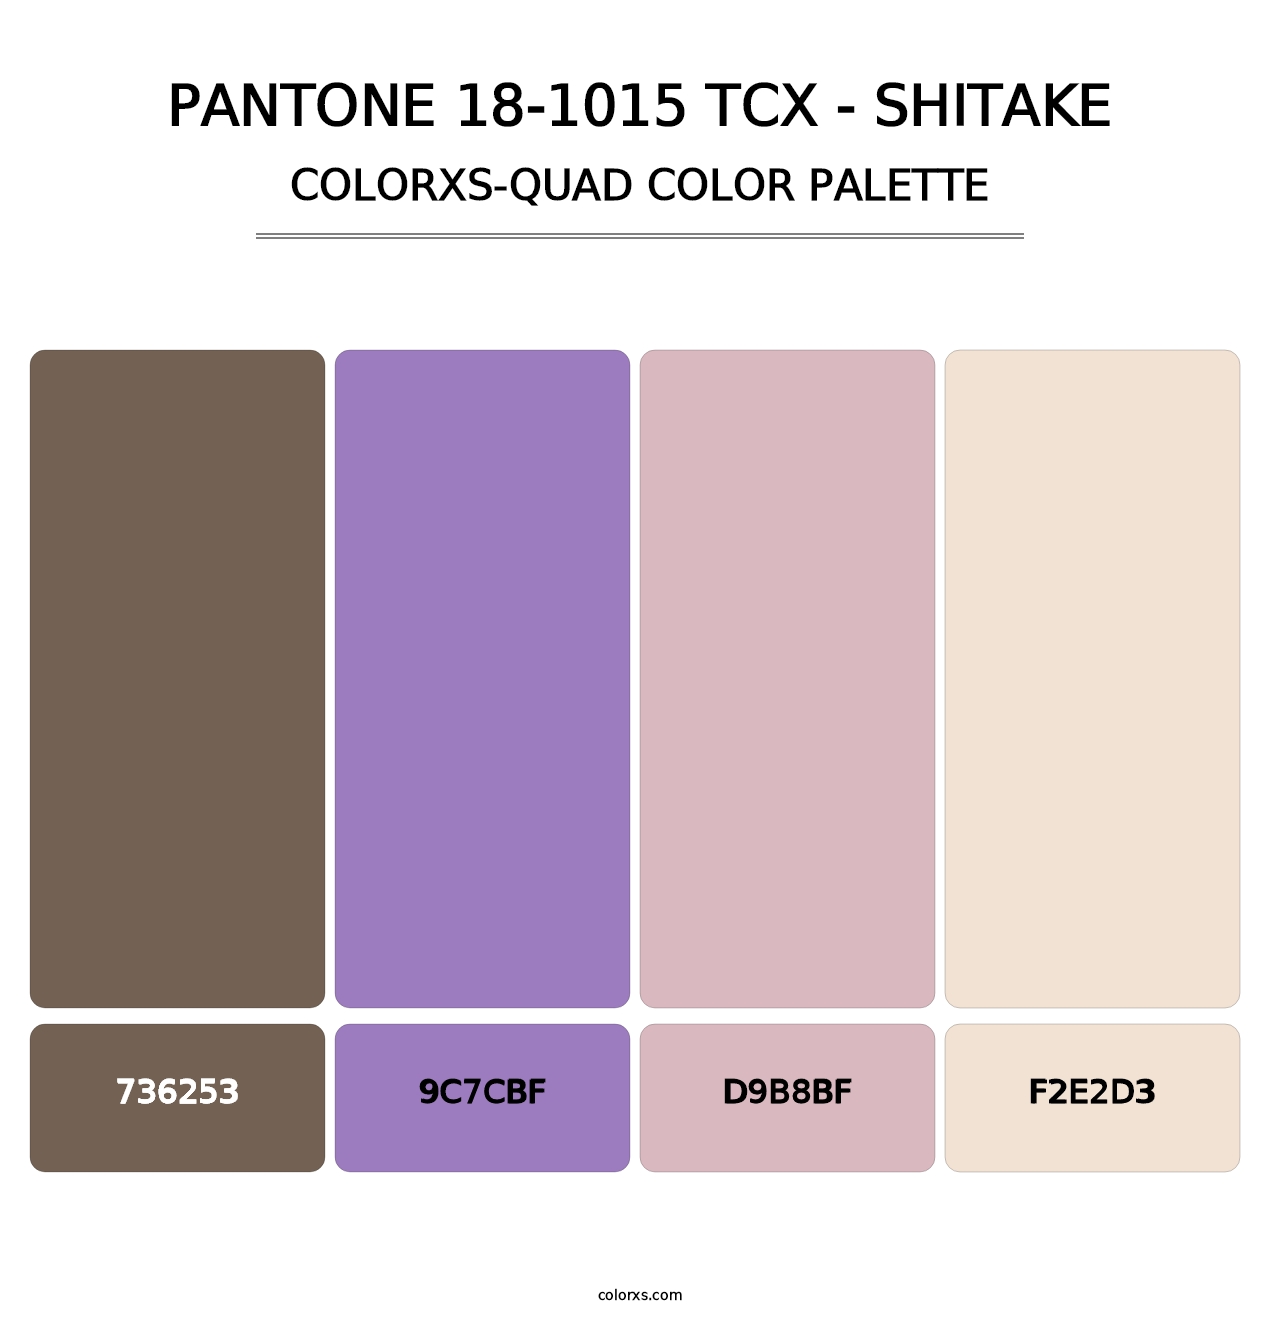 PANTONE 18-1015 TCX - Shitake - Colorxs Quad Palette